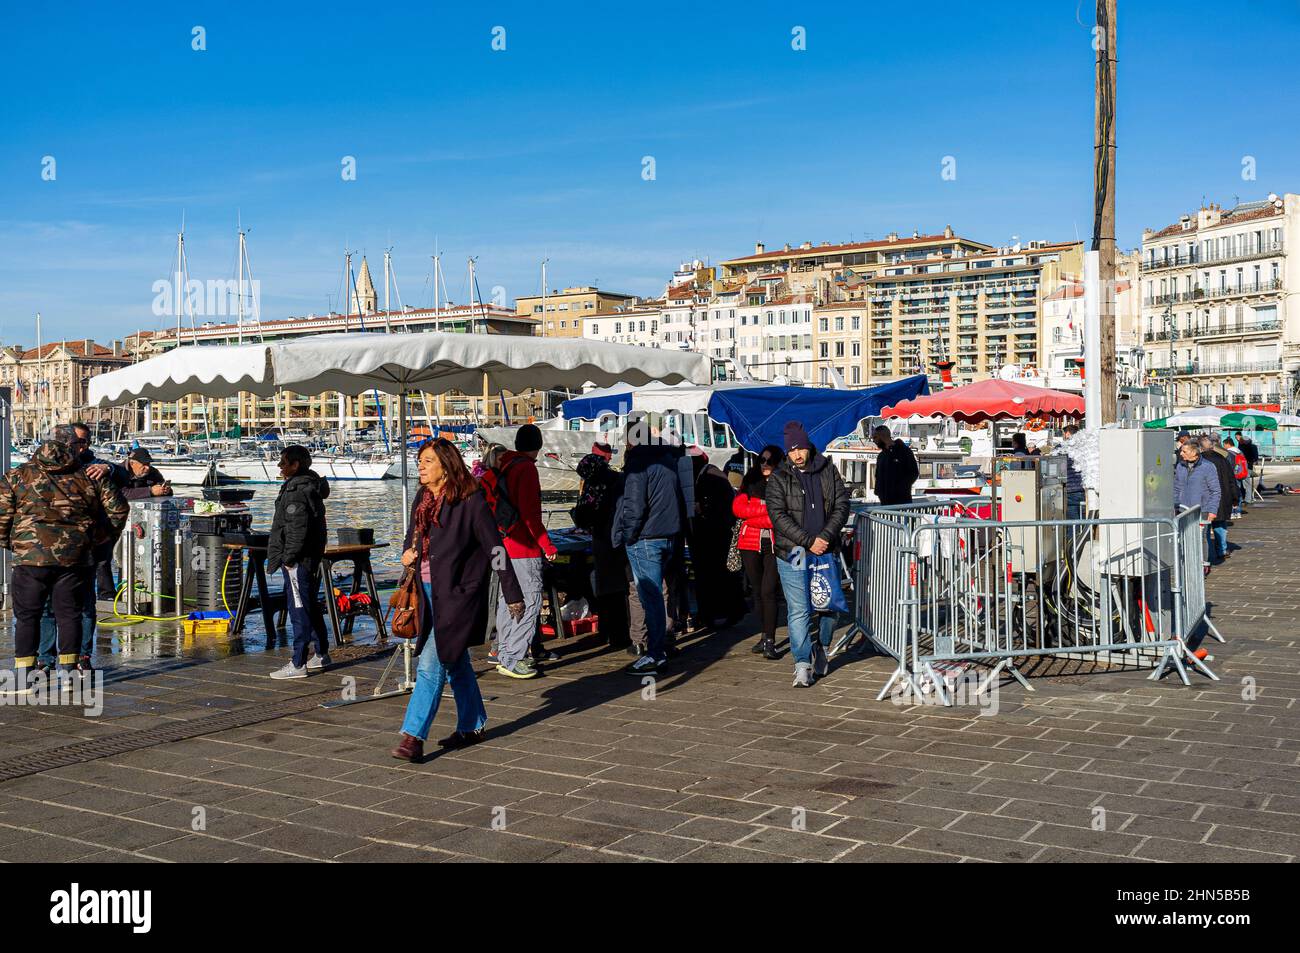 Le Vieux Port, Quai de la Fraternité, Marseille France 13 Paca Stock Photo